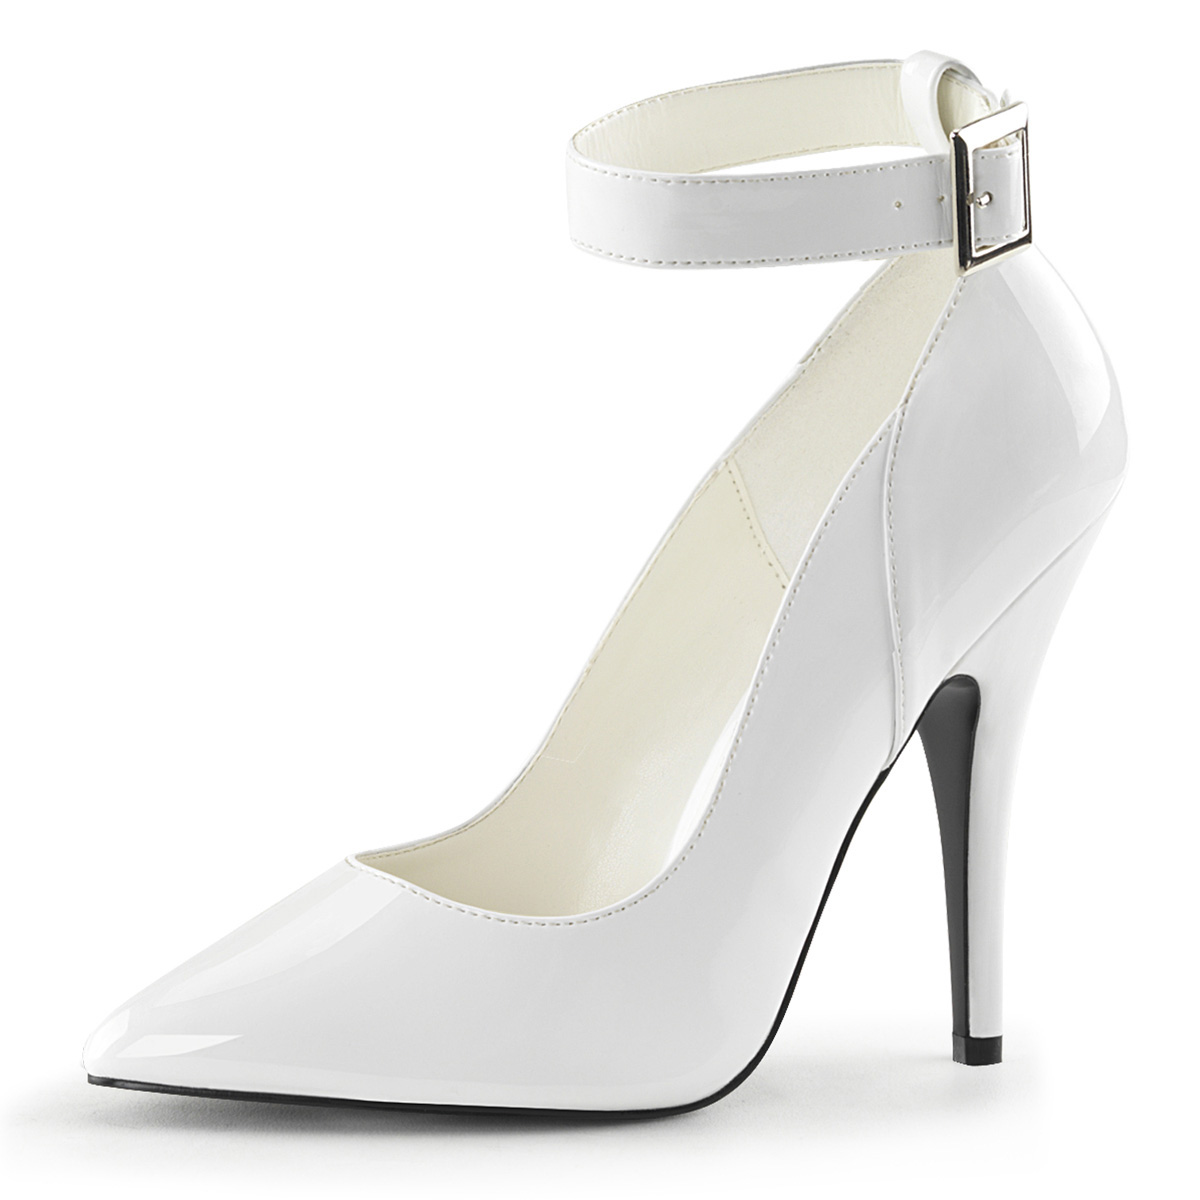 MAIERNISI JESSI Unisex Men's Women's Strappy Sandals Heels, Stilletos High  Heeled Sandals Patent White EU44 - Size 12 Women/10.5 Men, Patent White, 12  Women/10.5 Men price in UAE | Amazon UAE | kanbkam